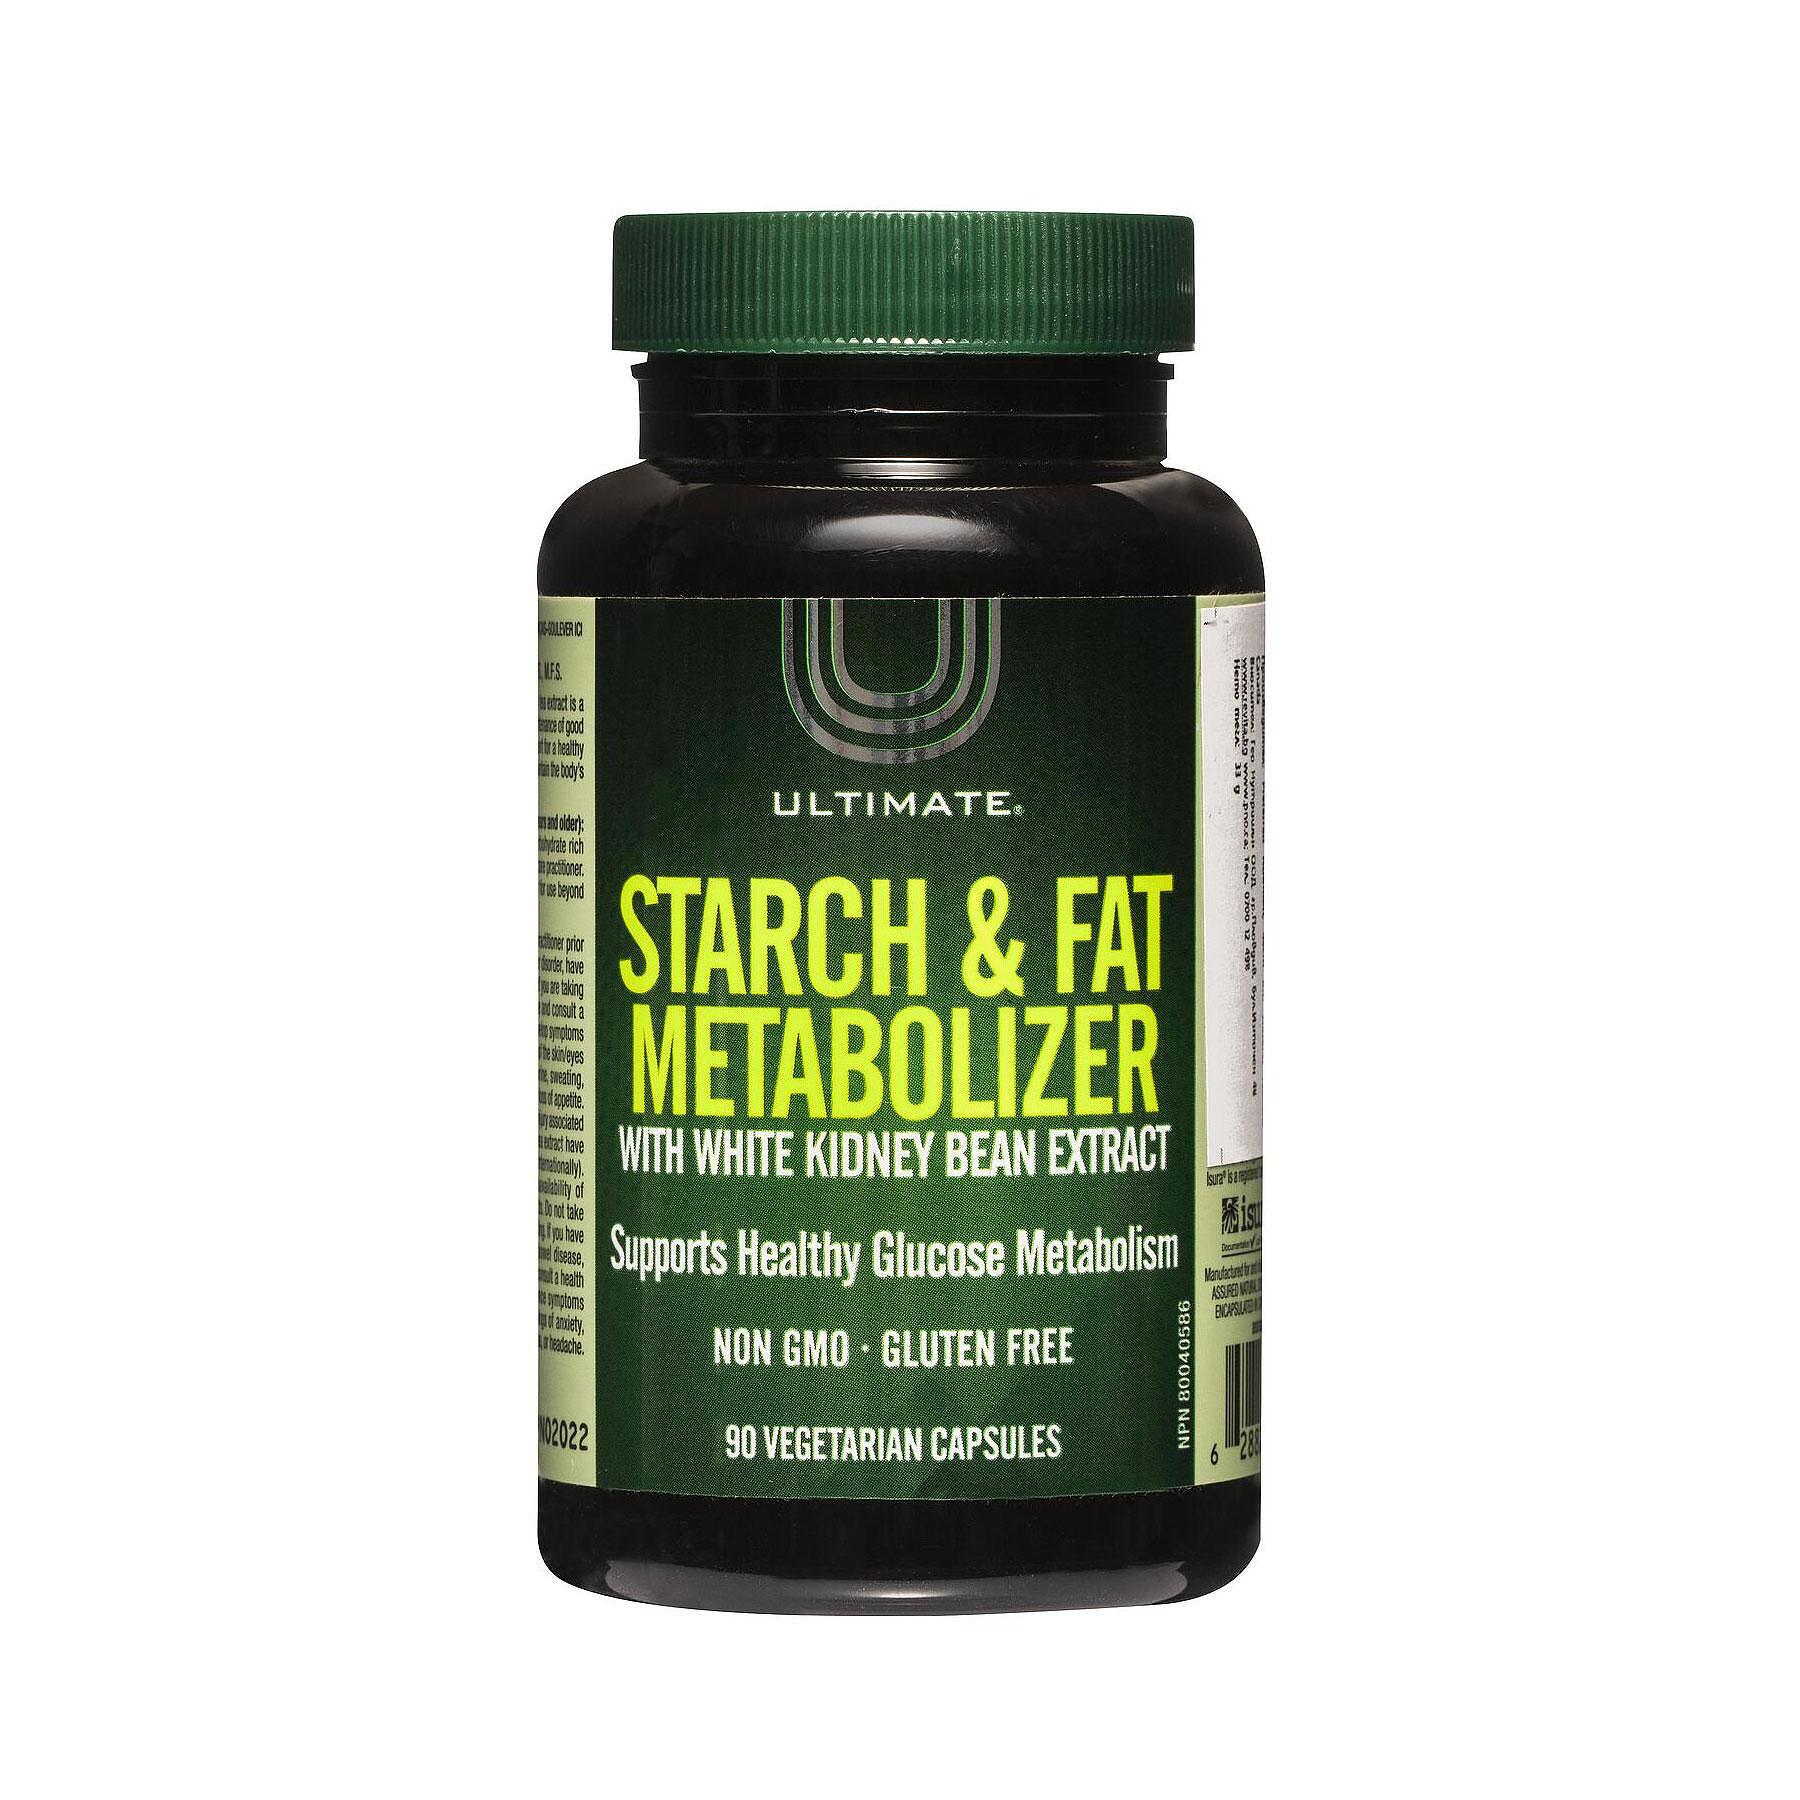 Starch & Fat Metabolizer